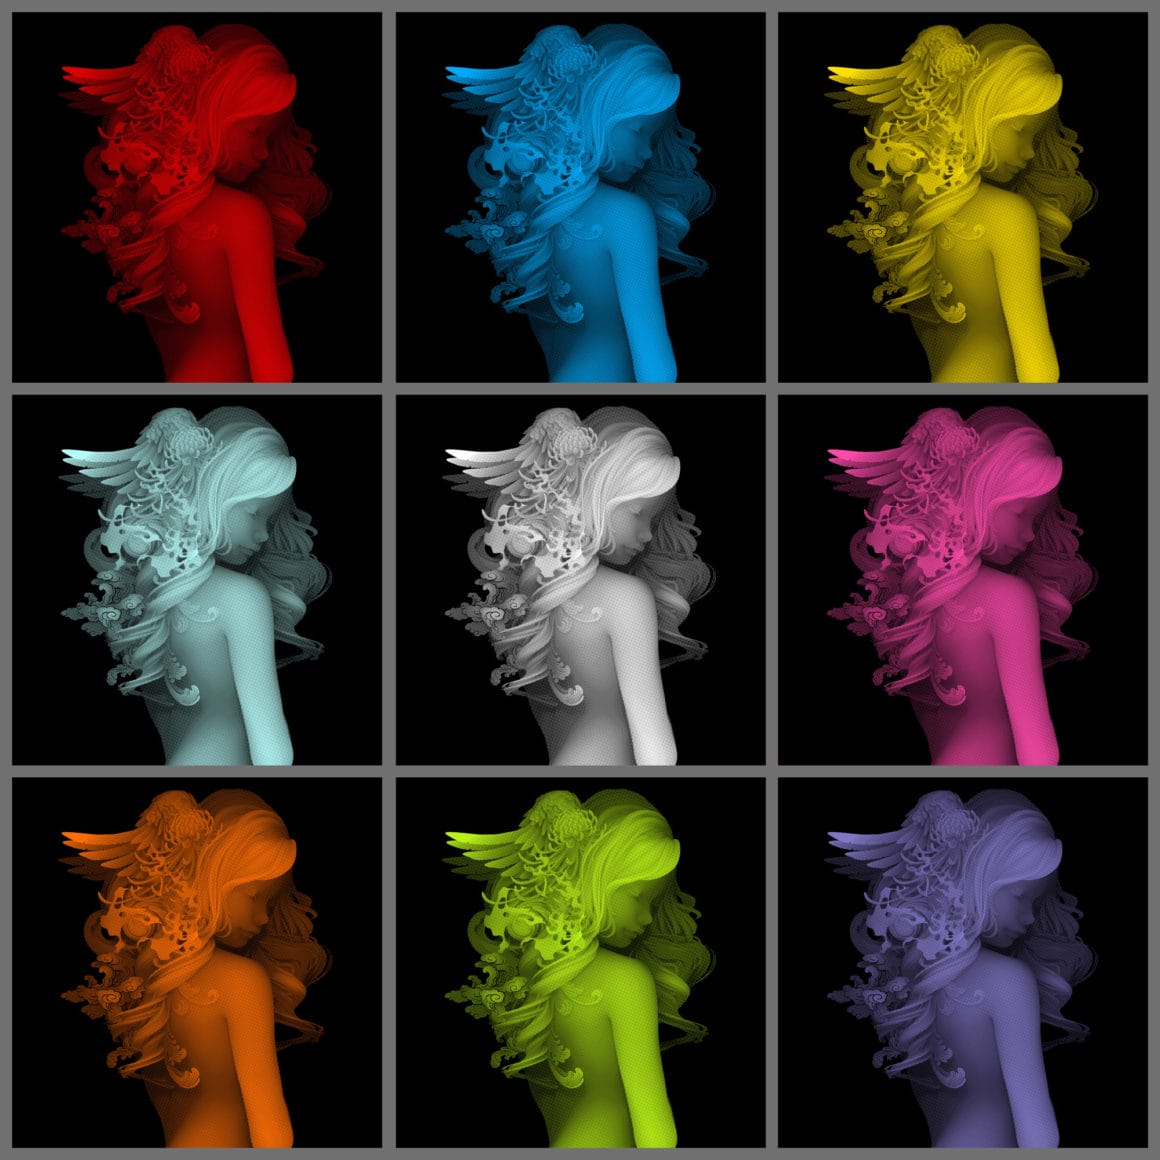 Le même buste de femme est représenté plusieurs fois, en couleurs différentes.  Femme aux cheveux abondants dans lesquels il y a une paire d'ailes et des fleurs